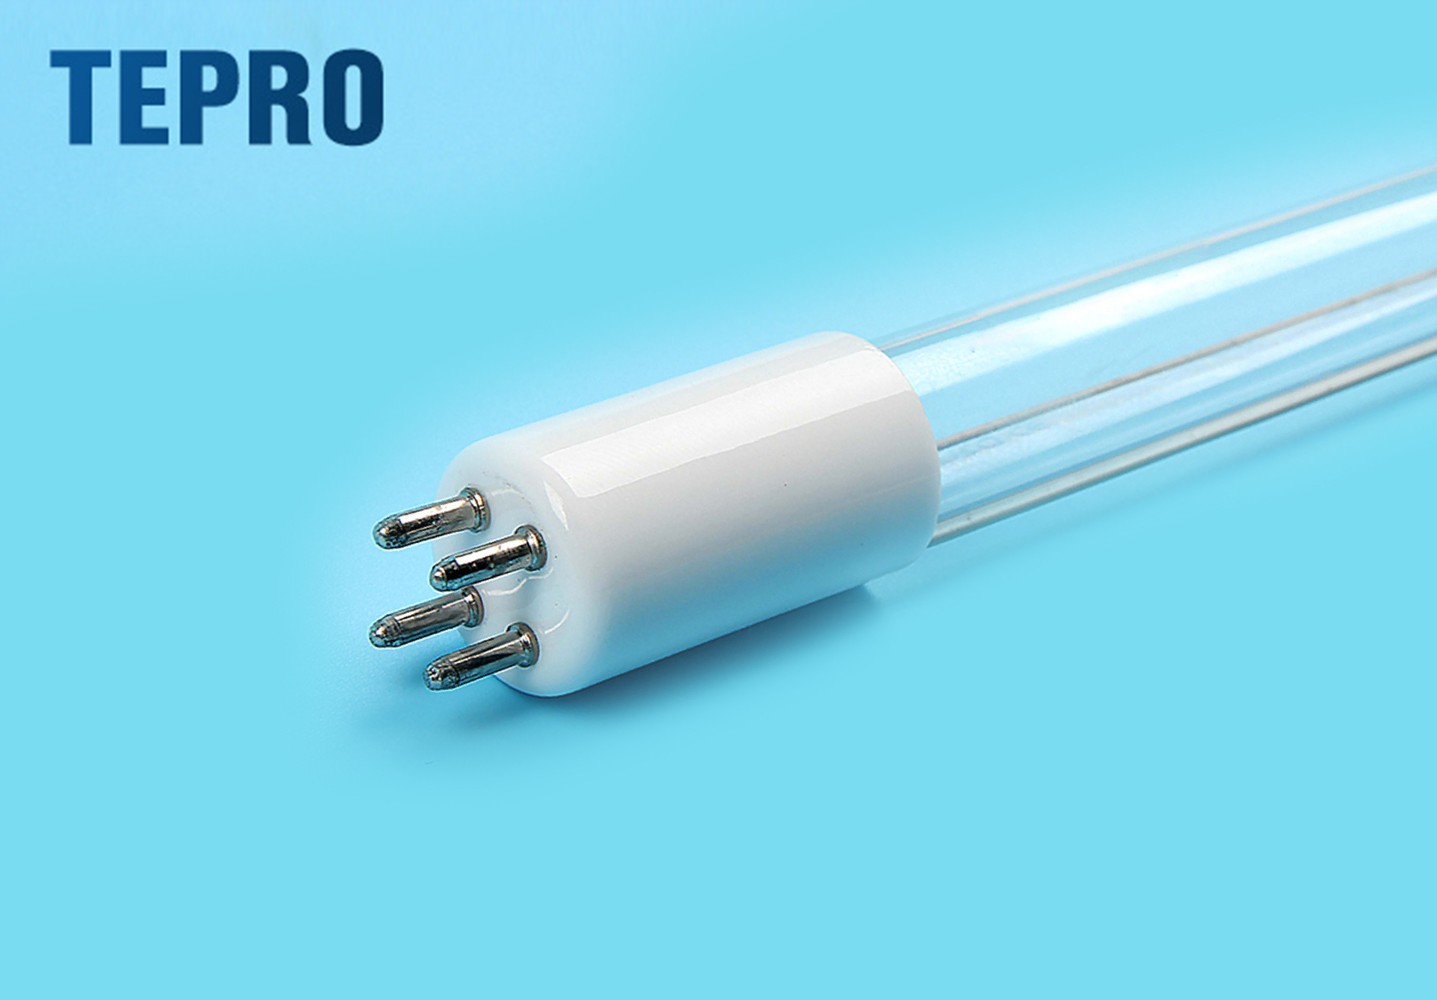 Tepro Wholesale led uv light bulb manufacturers-1